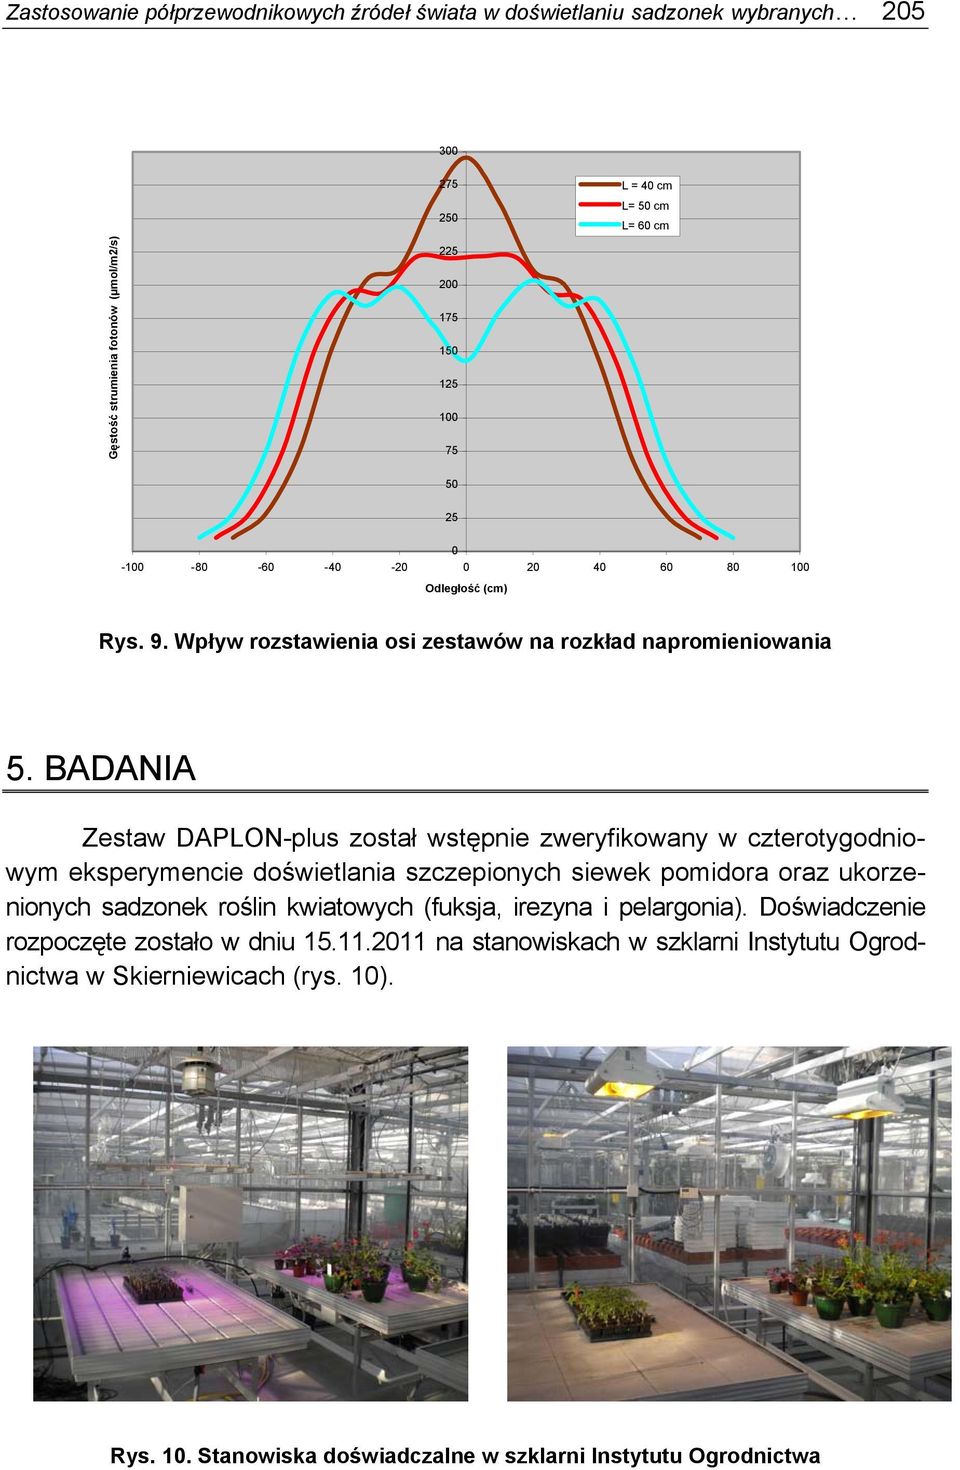 BADANIA Zestaw DAPLON-plus został wstępnie zweryfikowany w czterotygodniowym eksperymencie doświetlania szczepionych siewek pomidora oraz ukorzenionych sadzonek roślin kwiatowych